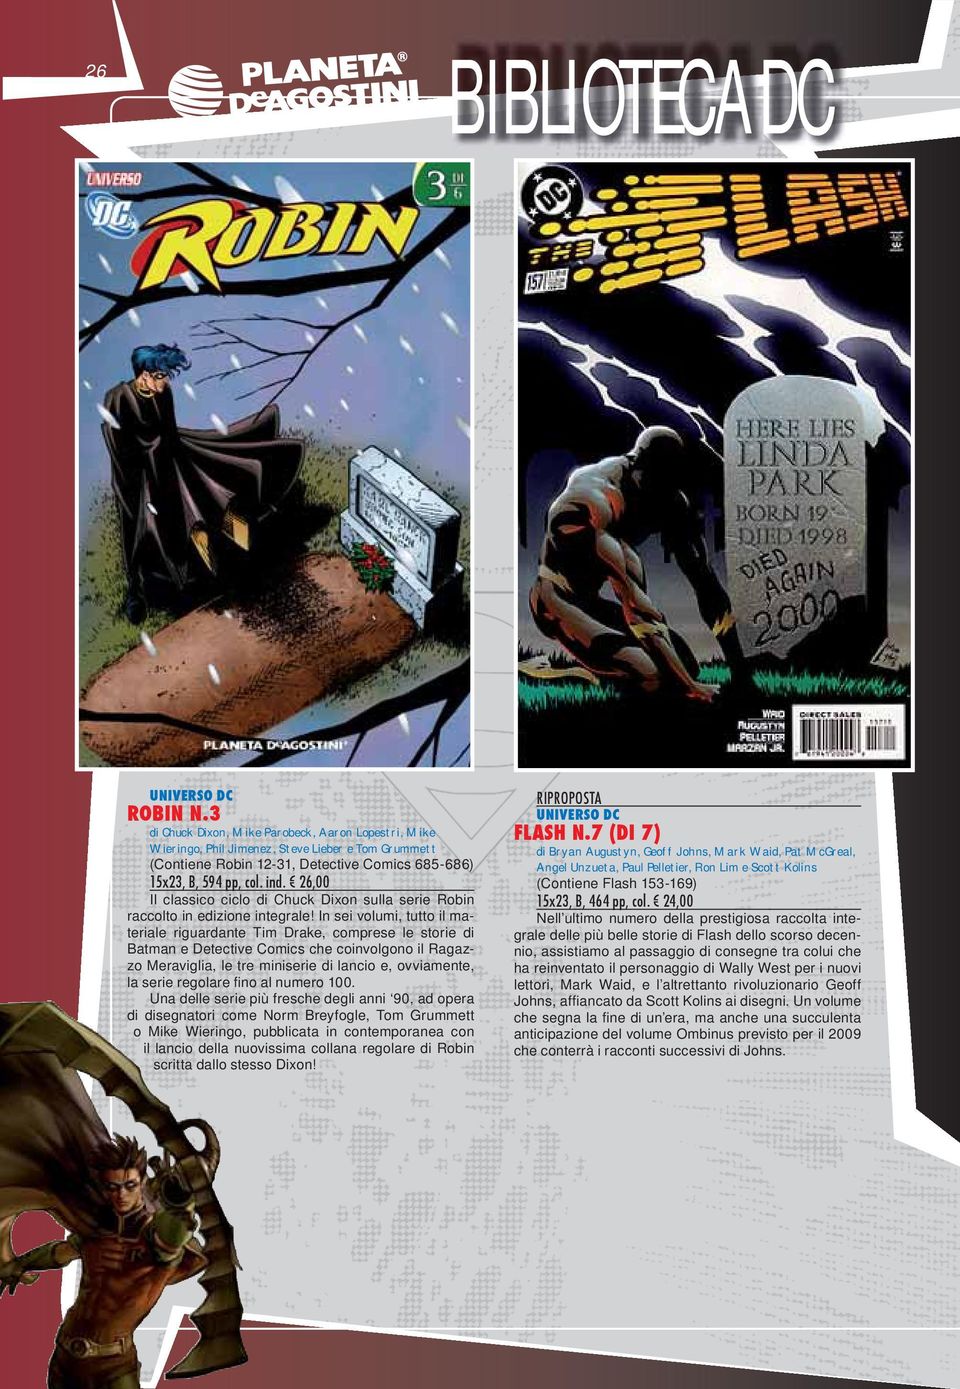 26,00 Il classico ciclo di Chuck Dixon sulla serie Robin raccolto in edizione integrale!